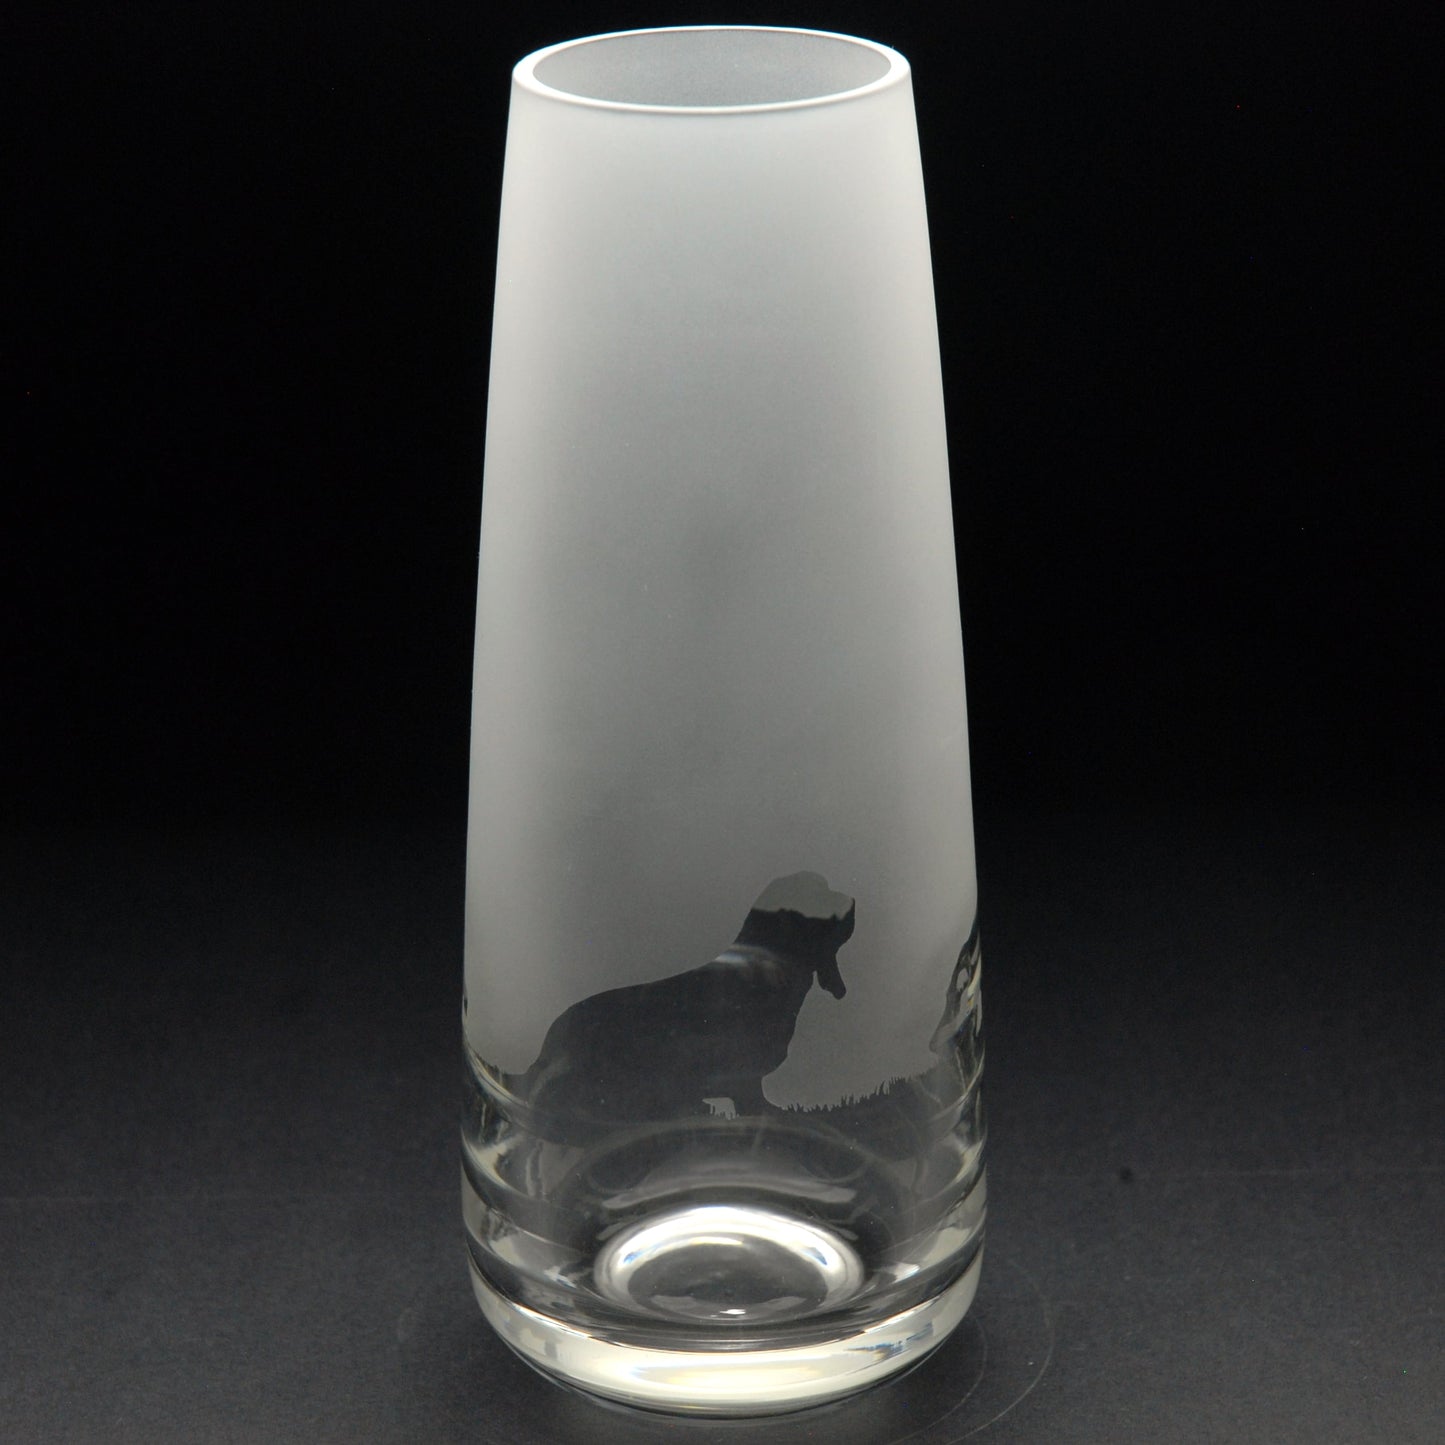 Basset Hound Dog Glass Bud Vase - 15cm - Hand Etched/Engraved Gift